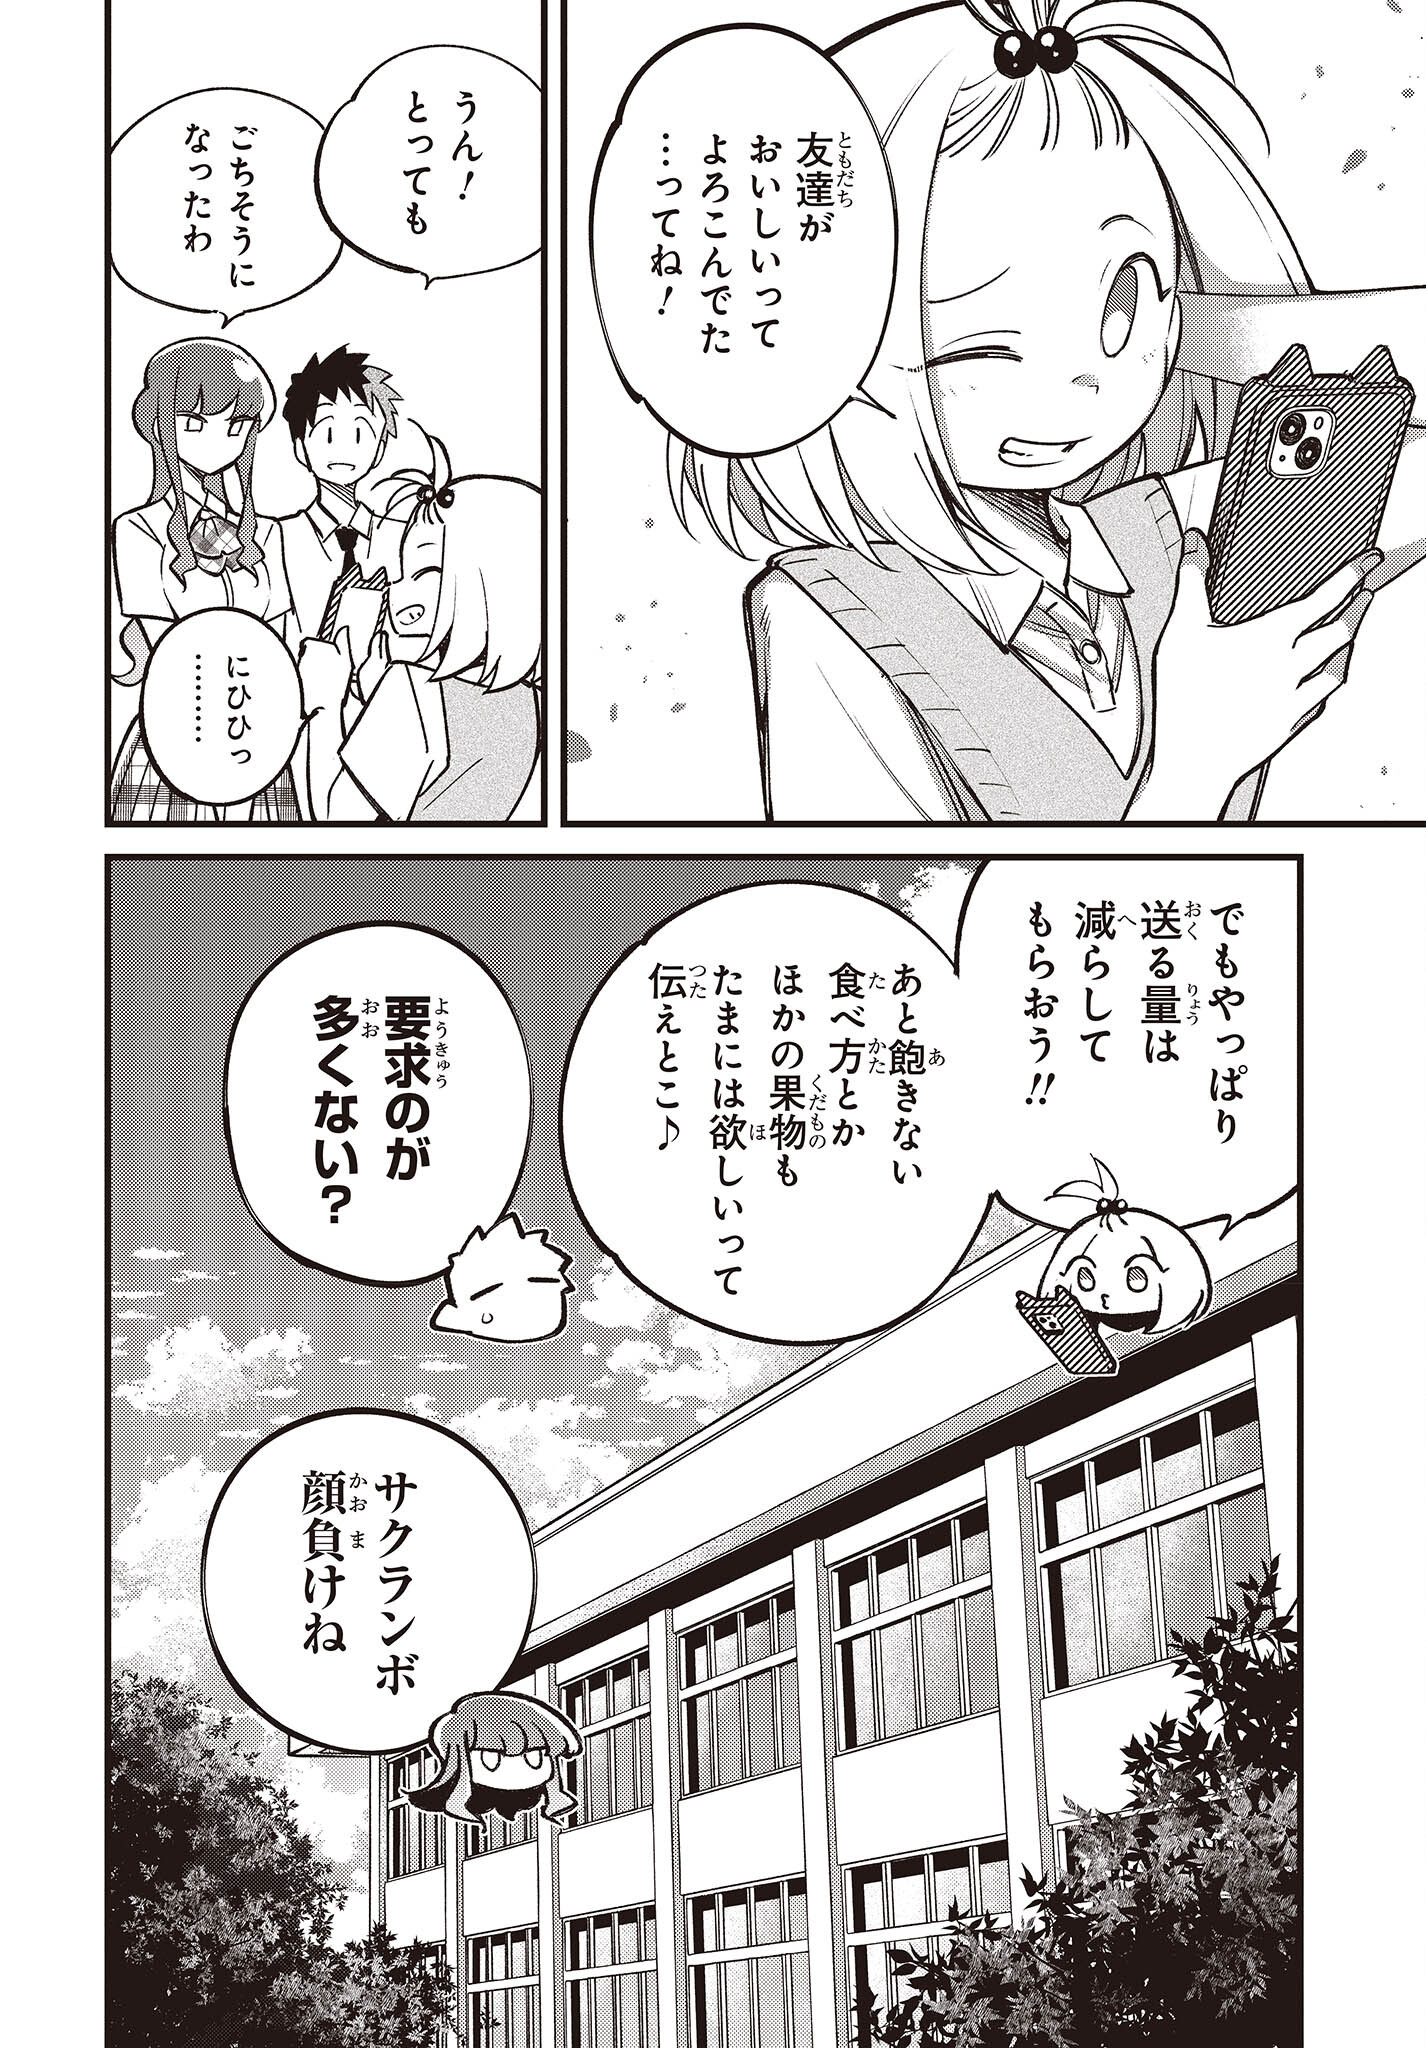 Ikimono-suki no Anima-san ni wa Honno Choppiri Doku ga aru - Chapter 4 - Page 22